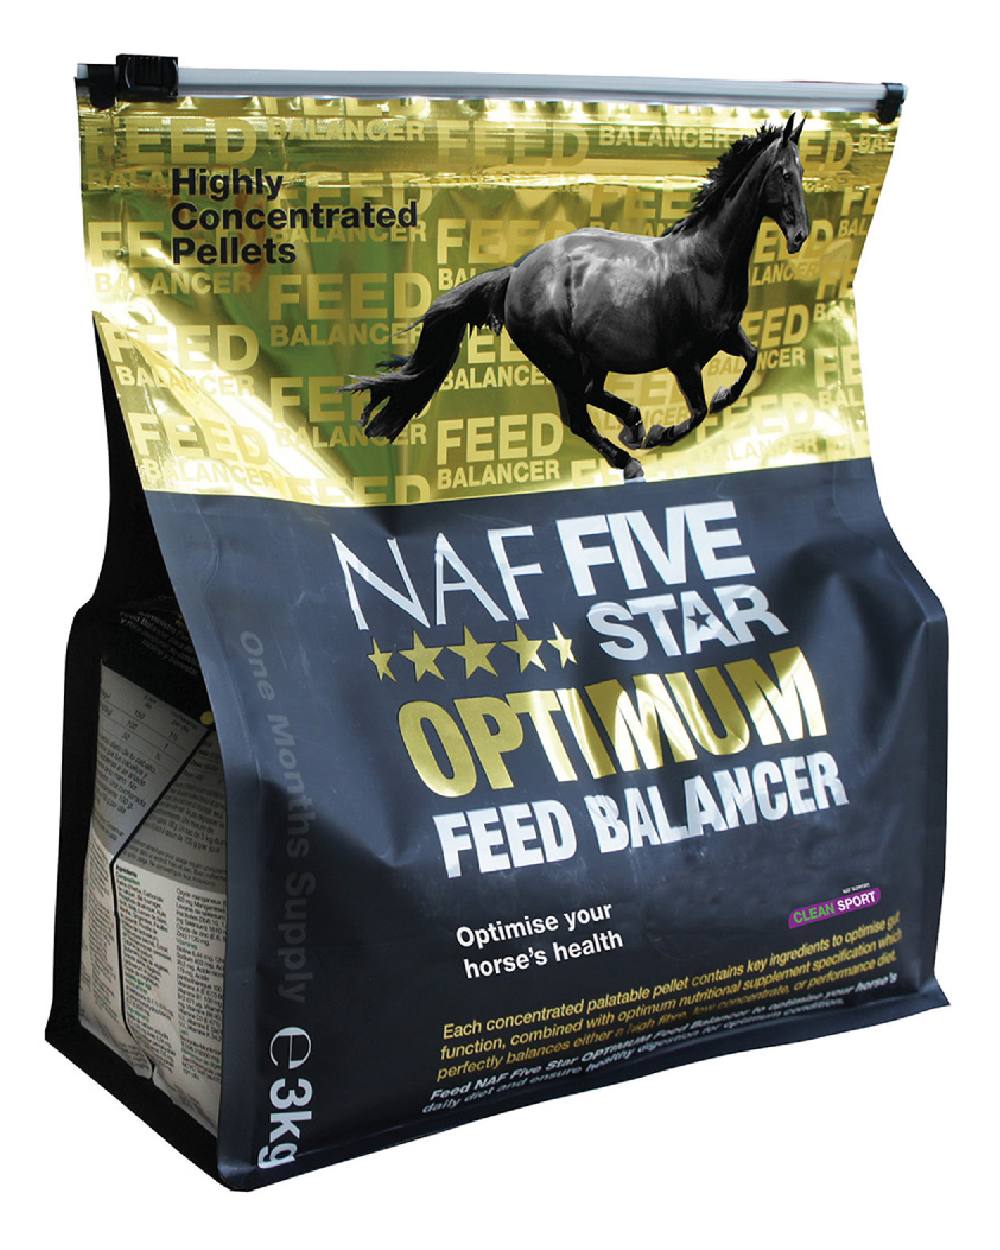 NAF Five Star Optimum Feed Balancer 3kg on white background